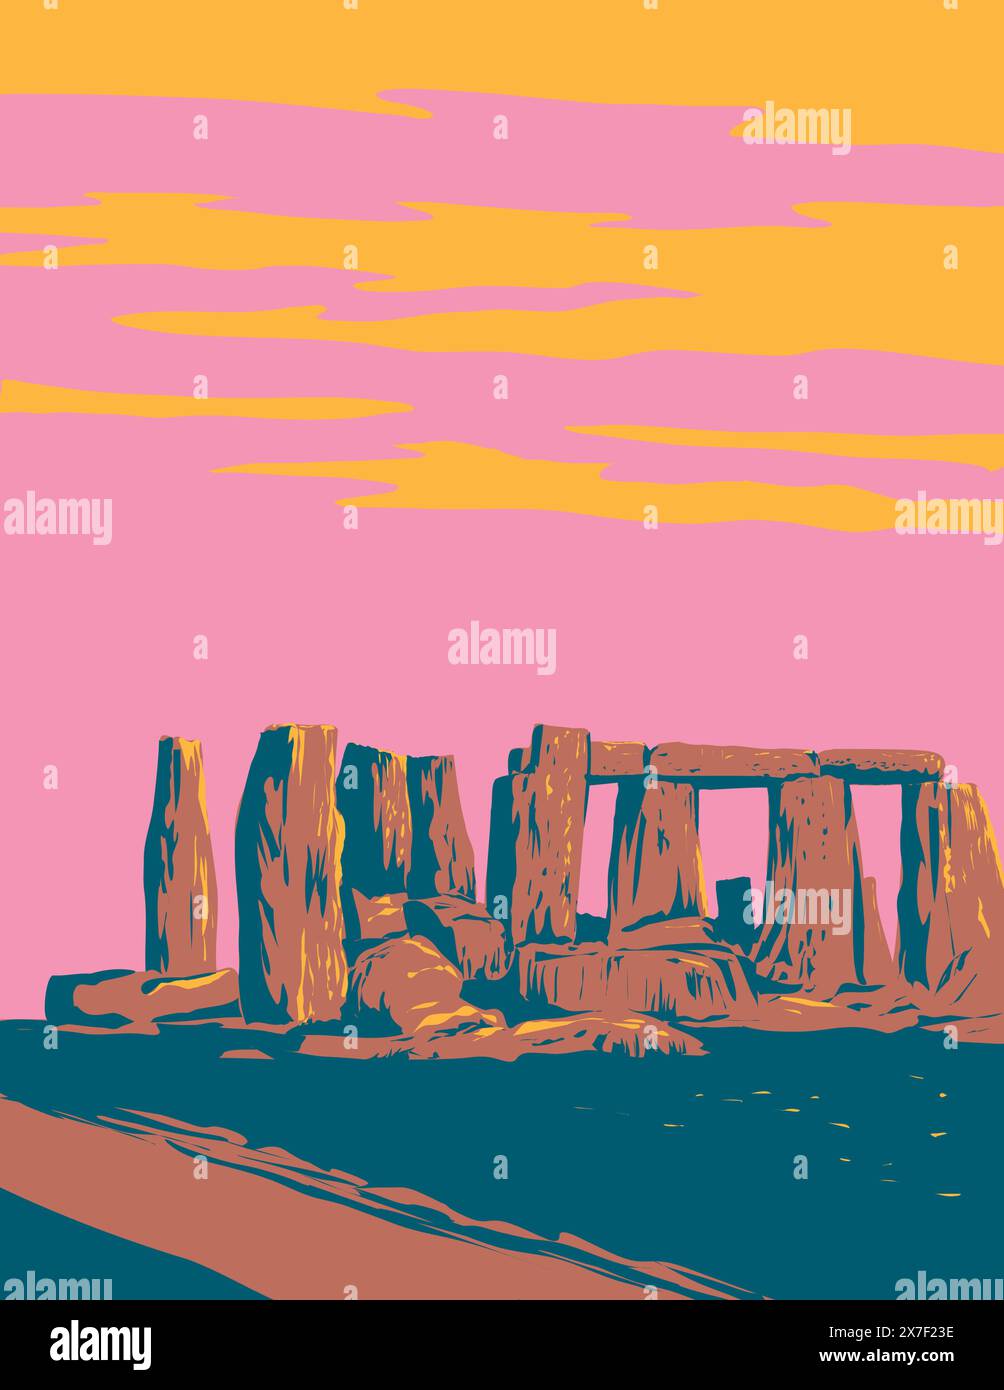 WPA affiche art de Stonehenge, un monument préhistorique sur la plaine de Salisbury dans le Wiltshire, Angleterre, le Royaume-Uni et les îles britanniques fait en travaux Illustration de Vecteur